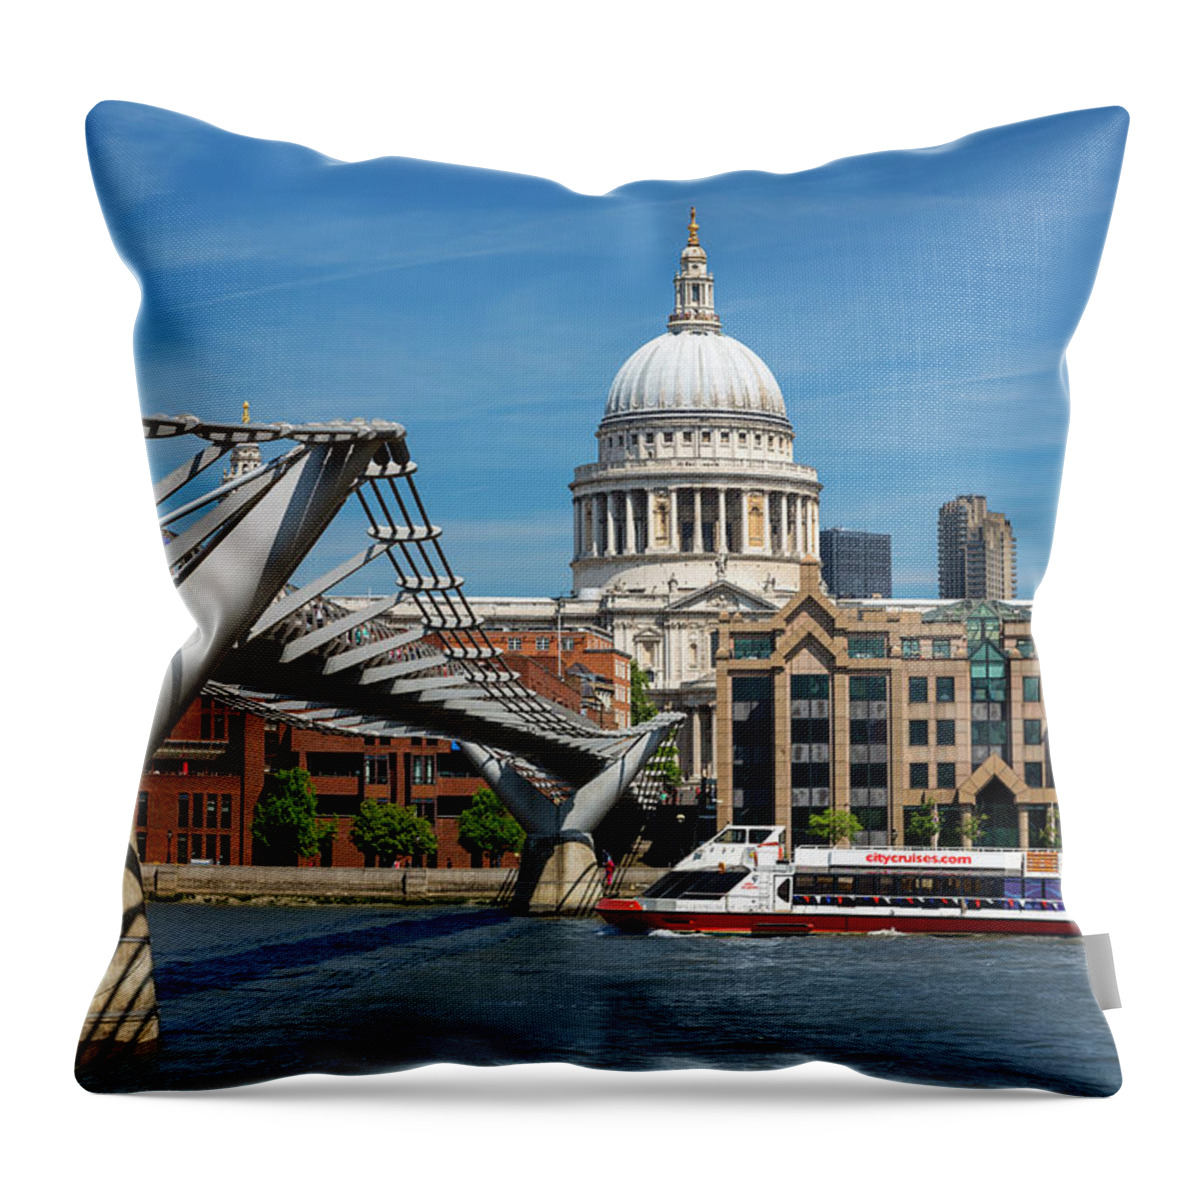 London Millennium Footbridge Throw Pillow featuring the photograph London, Millennium Footbridge And St by Sylvain Sonnet